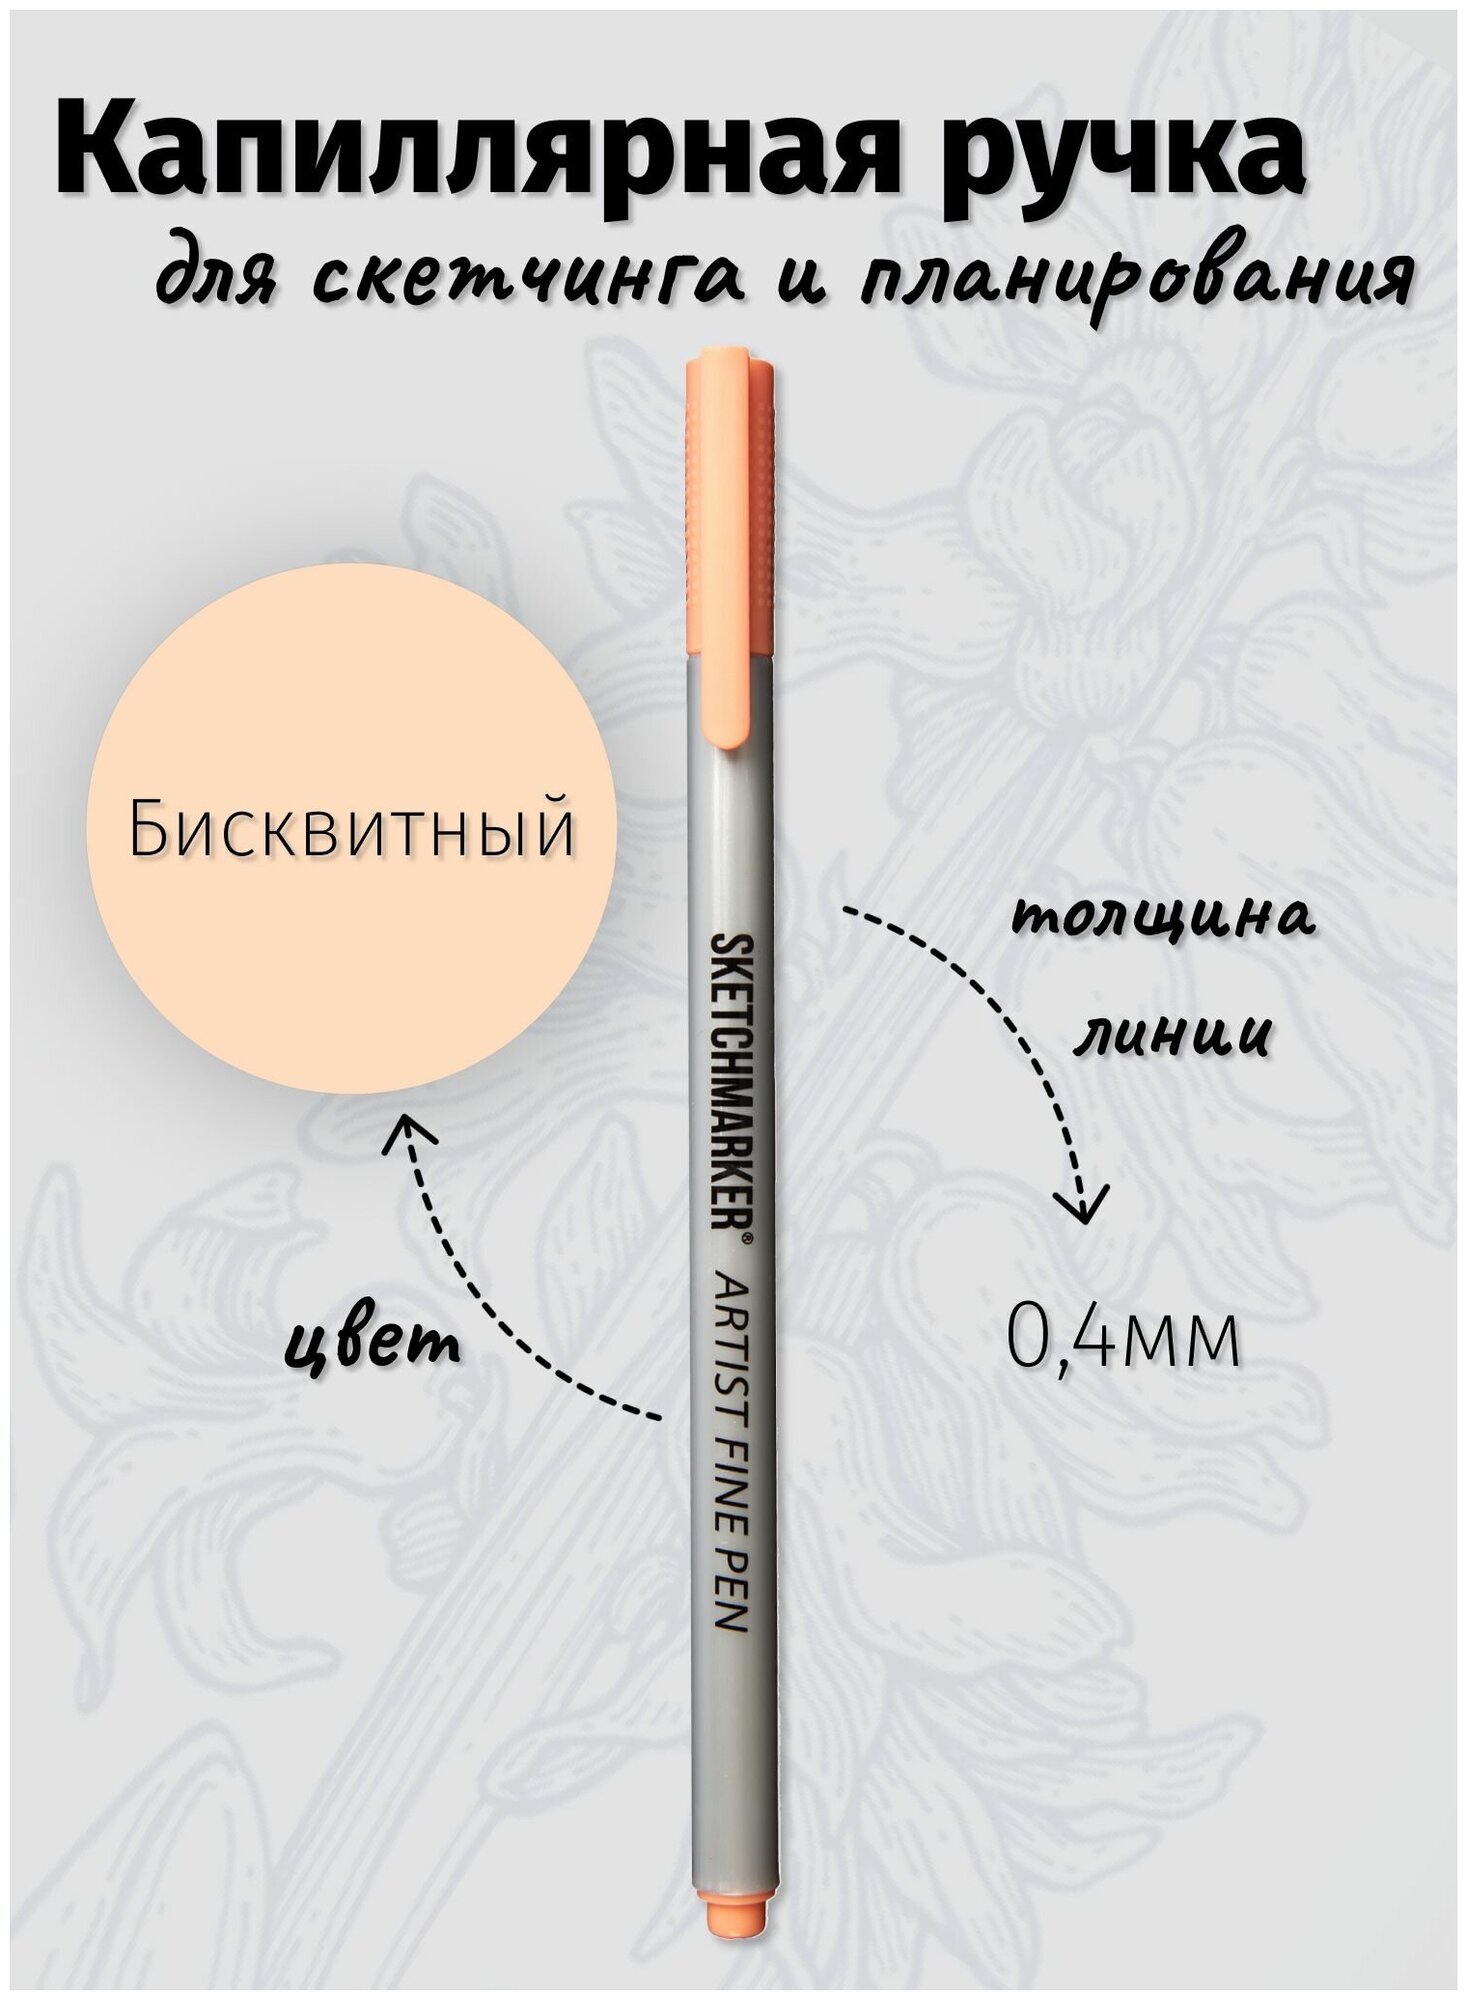 Капиллярная ручка линер SKETCHMARKER Artist fine цвет чернил: Бисквитный